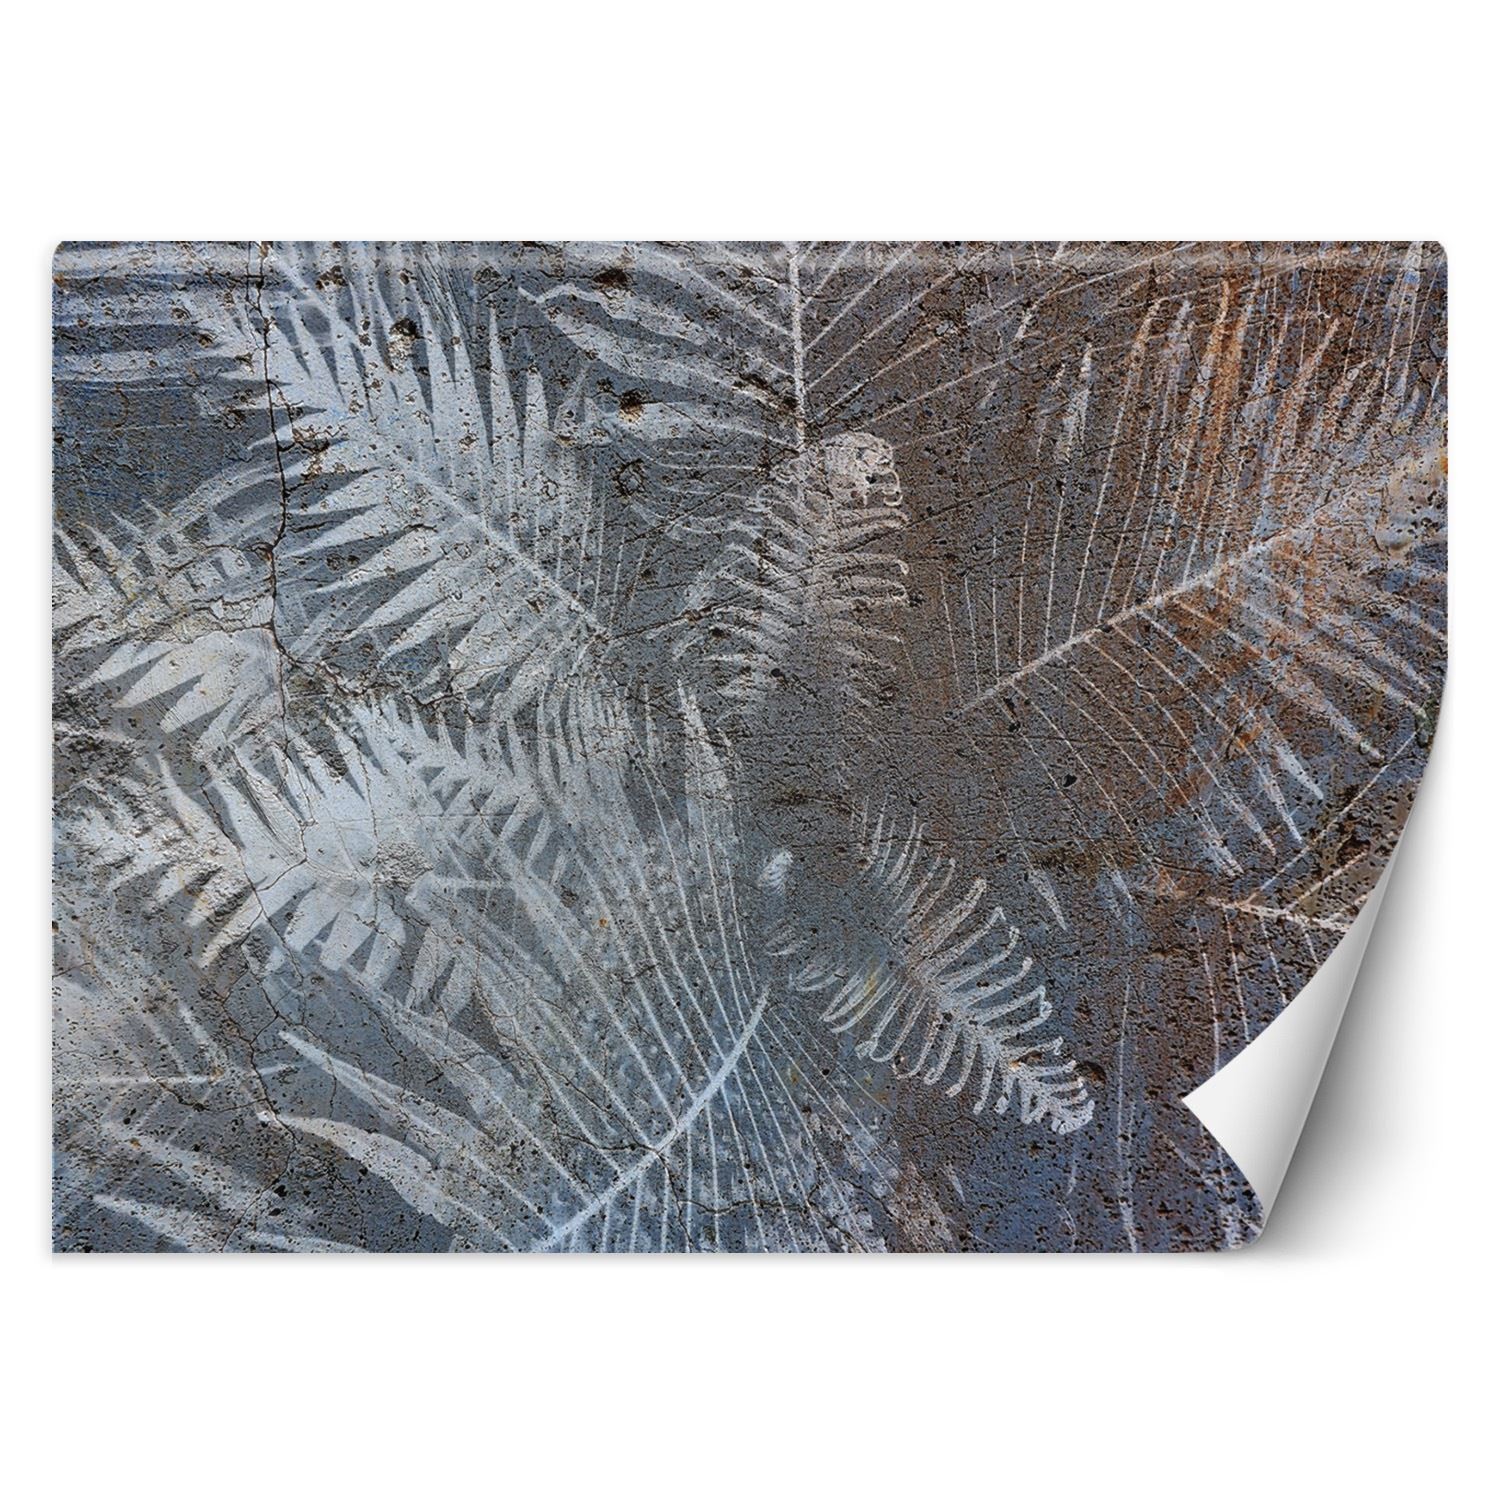 Trend24 – Behang – Palmblaadjes Op Beton – Vliesbehang – Behang Woonkamer – Fotobehang – 450x315x2 cm – Incl. behanglijm